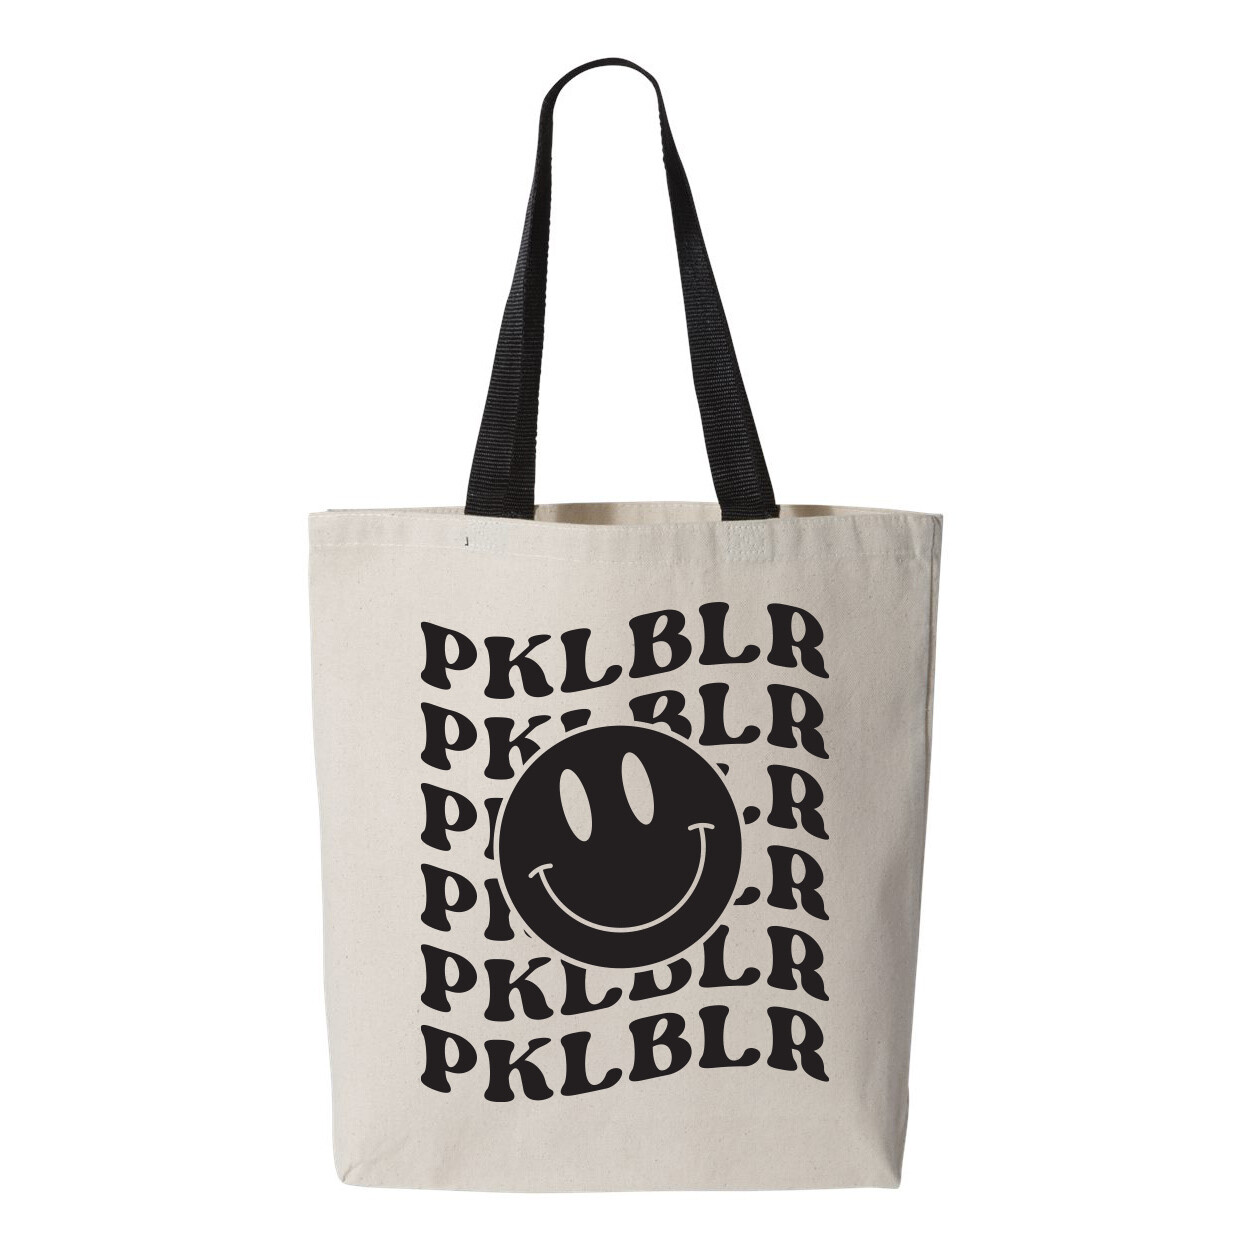 The Happy PKLBLR Tote Bag